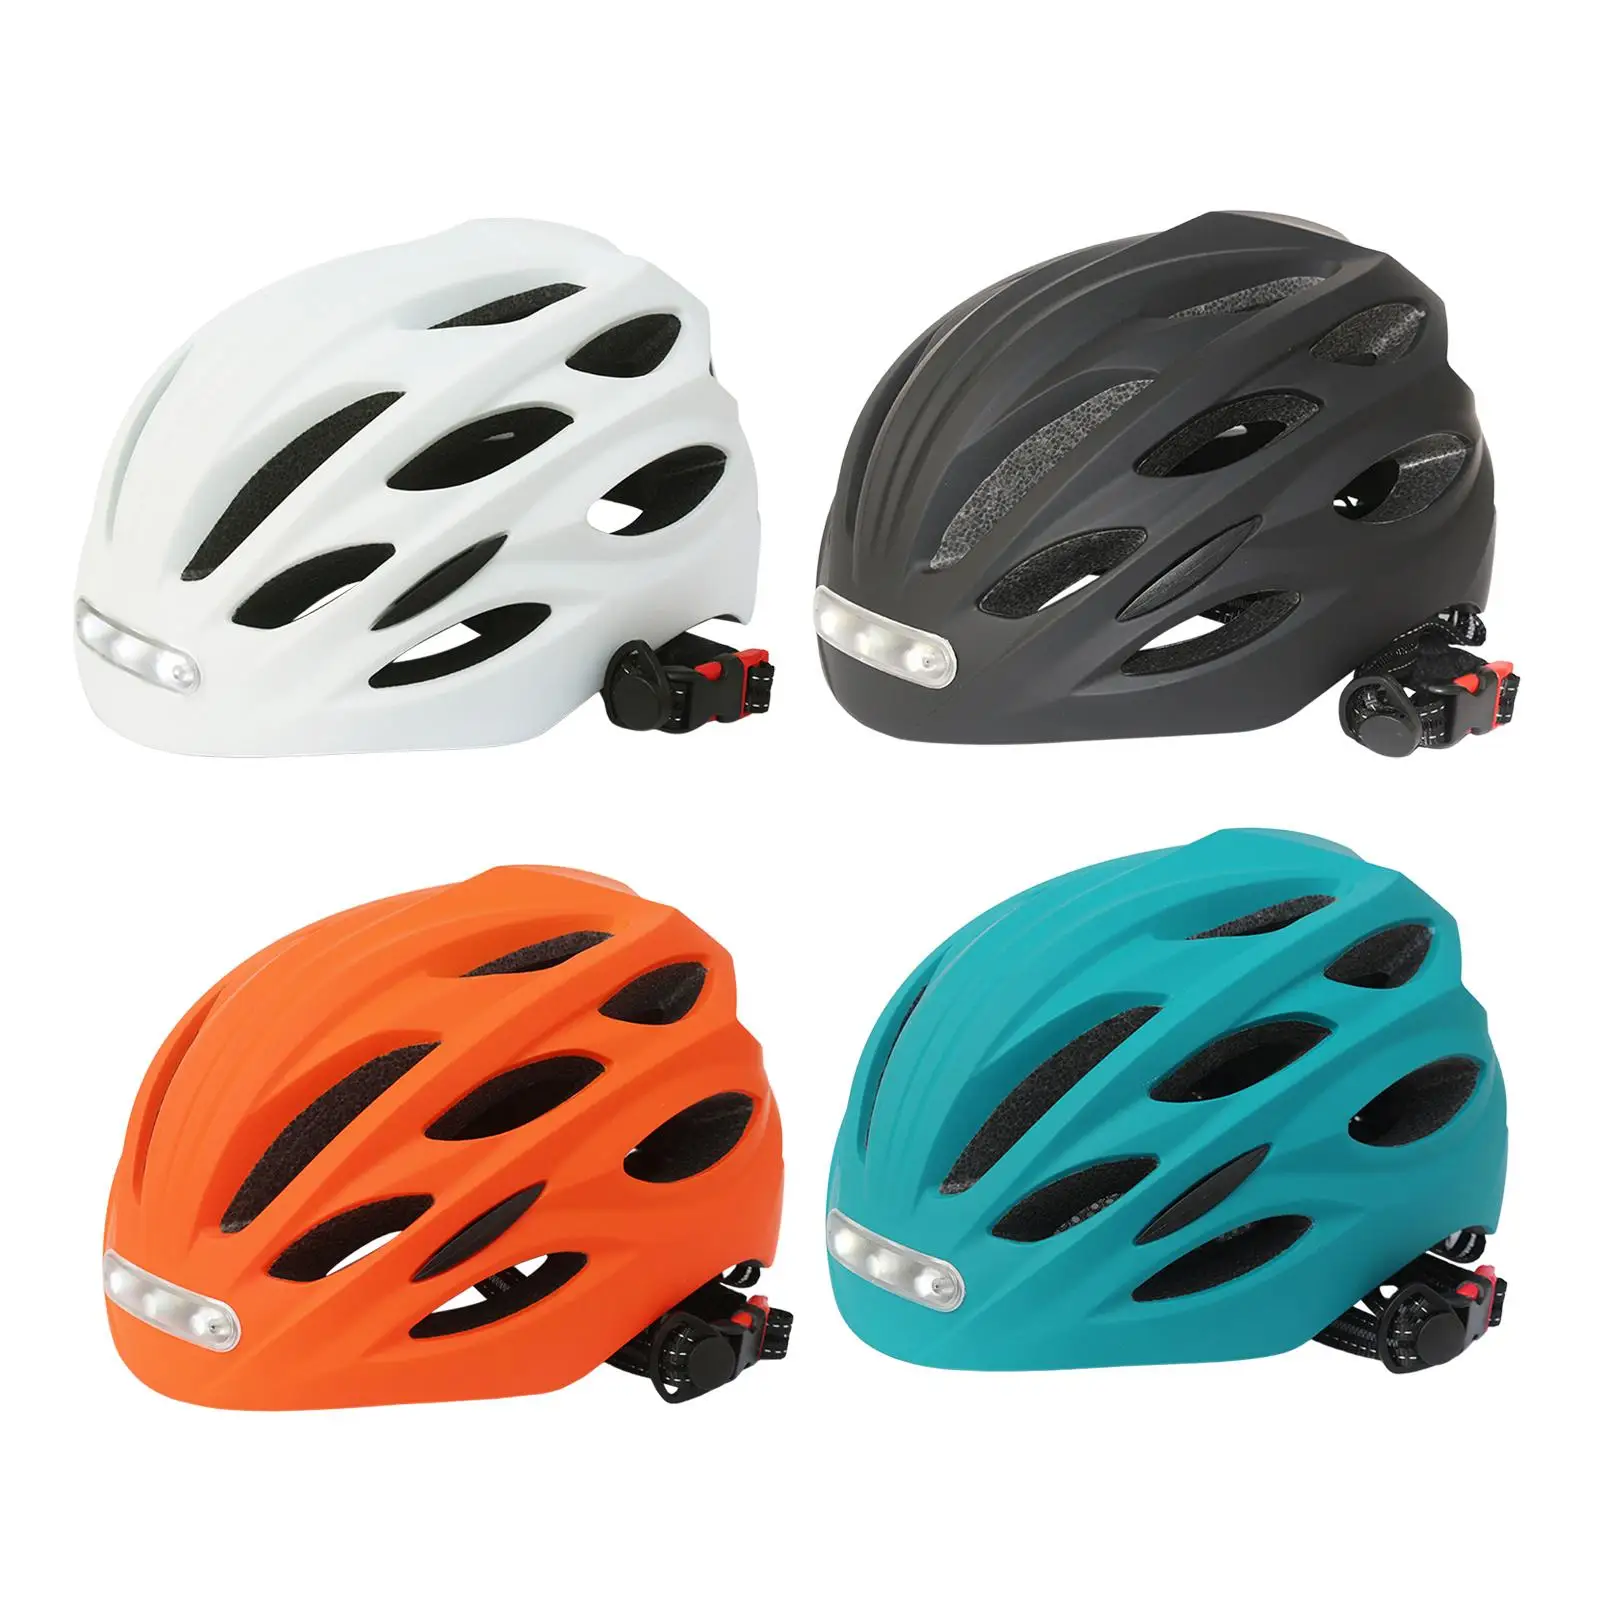 

Велосипедные шлемы для взрослых со стандартной планкой, Молодежные велосипедные шлемы, велосипедный шлем для езды на велосипеде, дорожного и горного велосипеда, катания на коньках